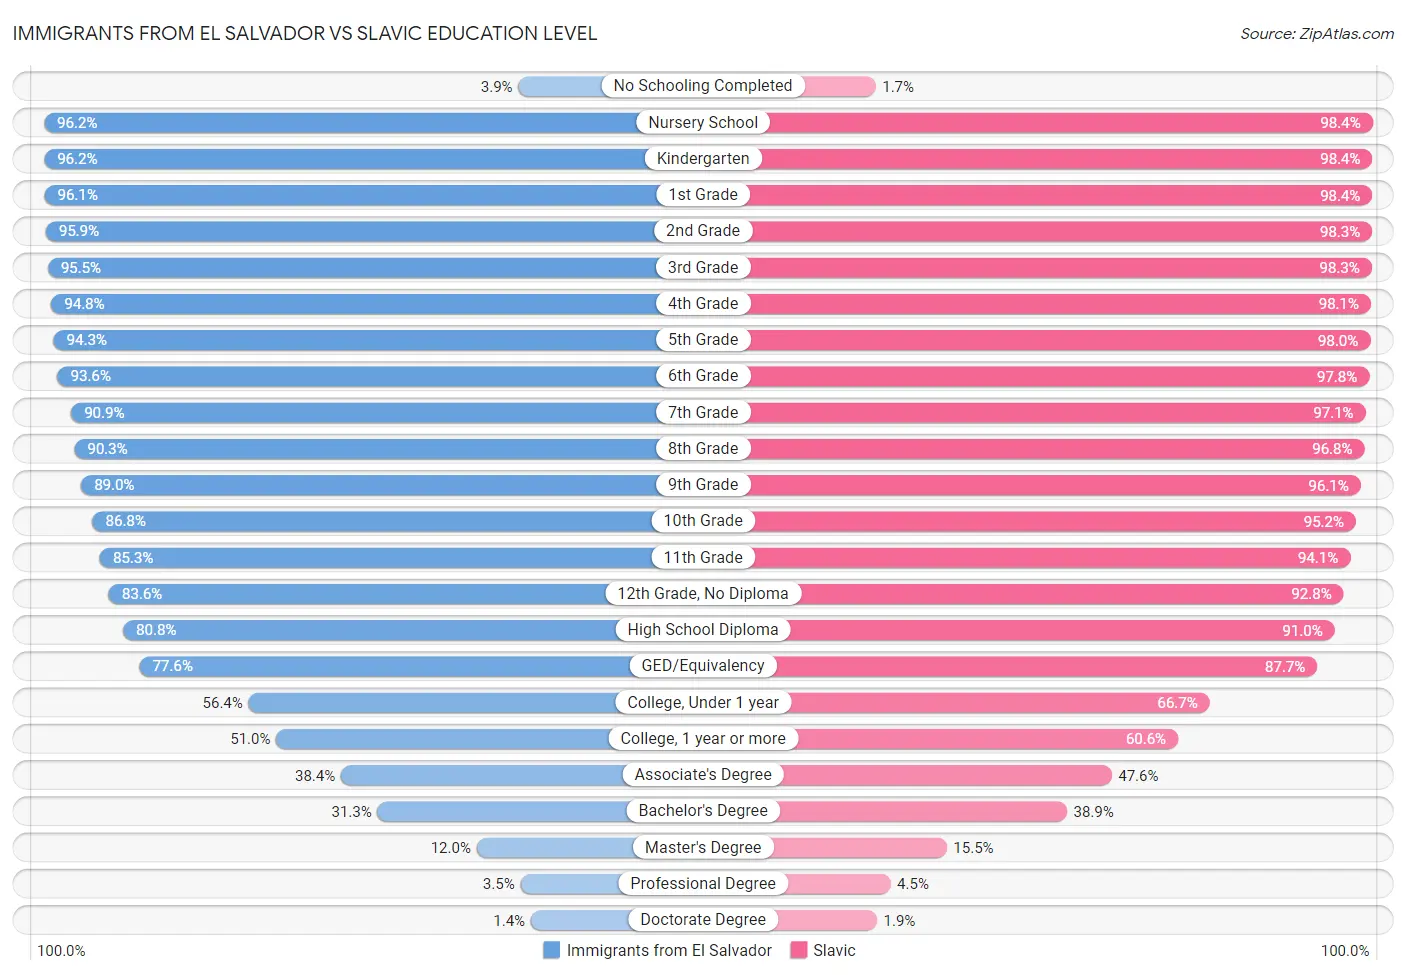 Immigrants from El Salvador vs Slavic Education Level